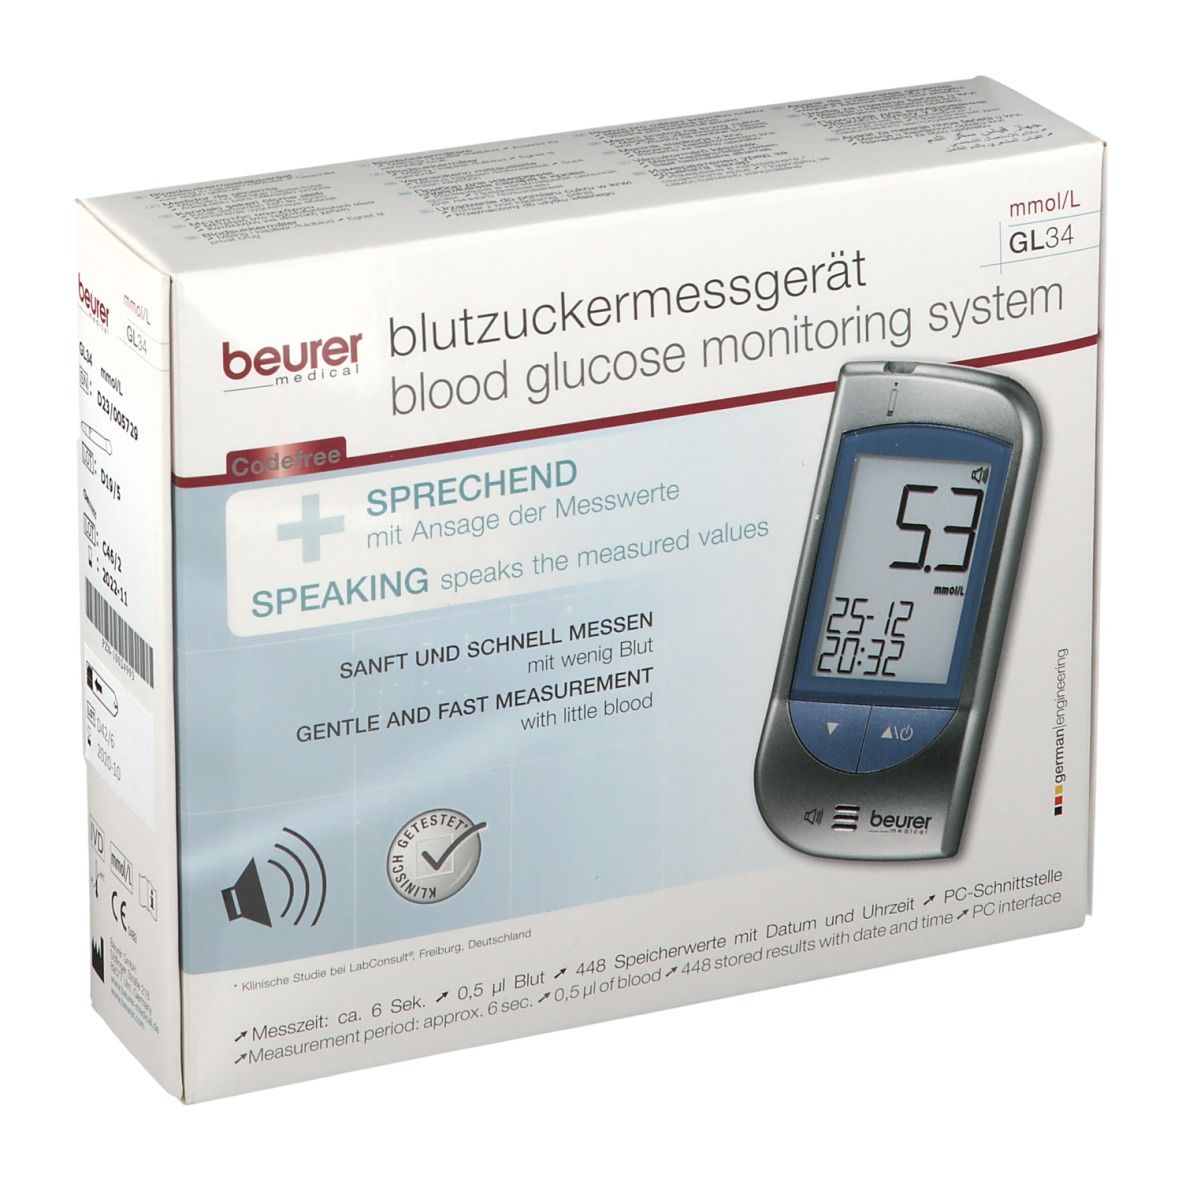 beurer Blutzuckermessgerät GL 34 mmol/L